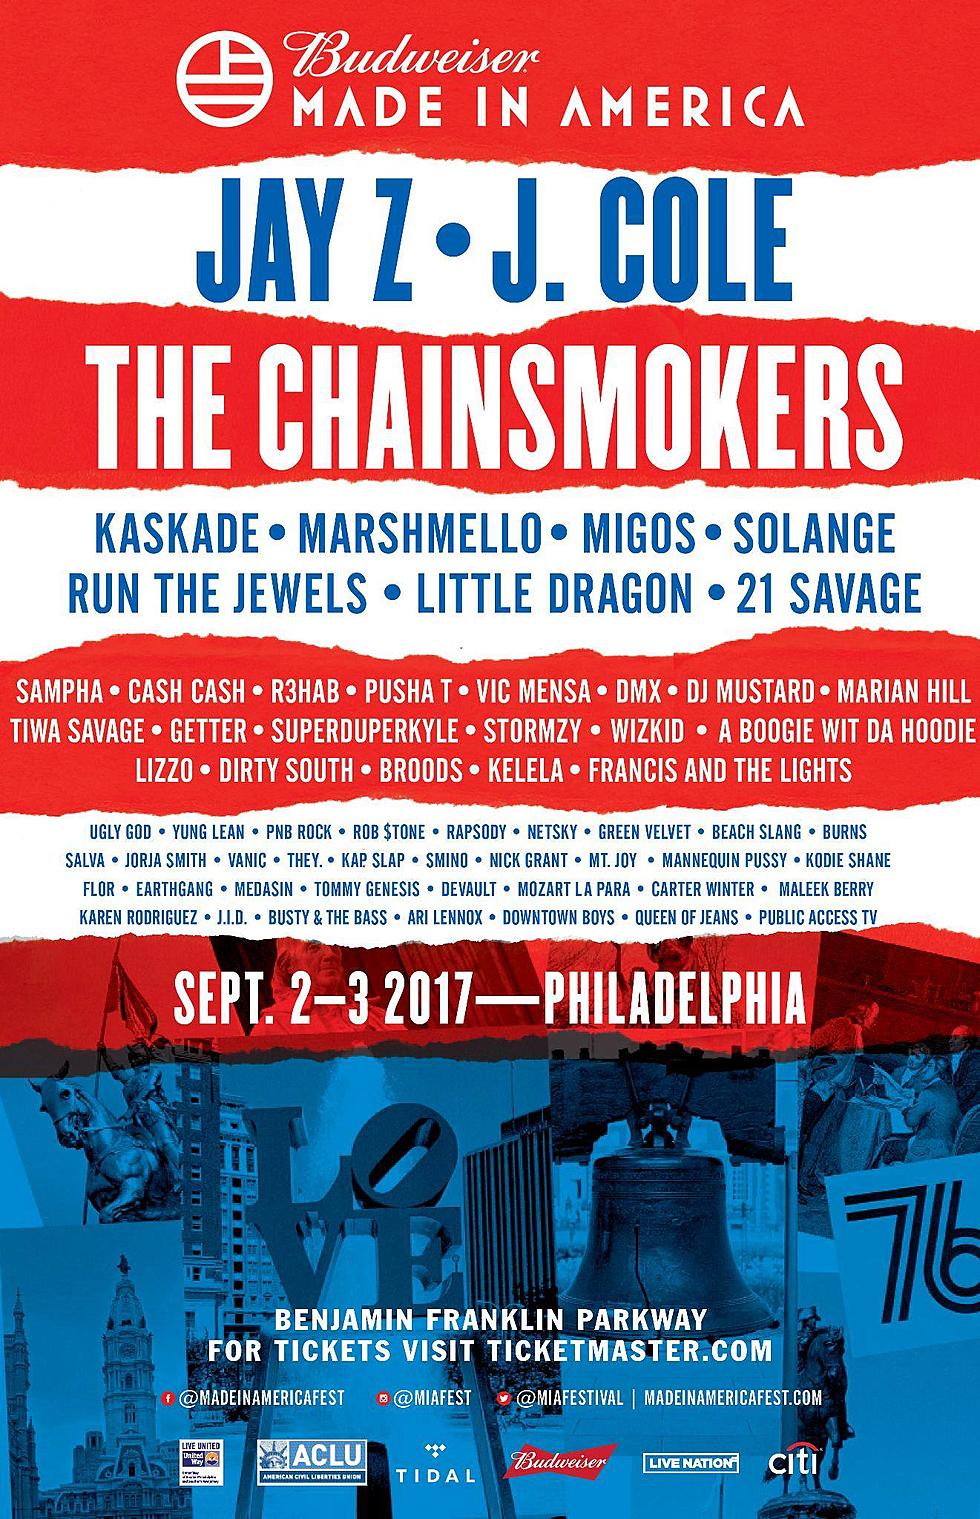 Made in America Music Festival — Visit Philadelphia